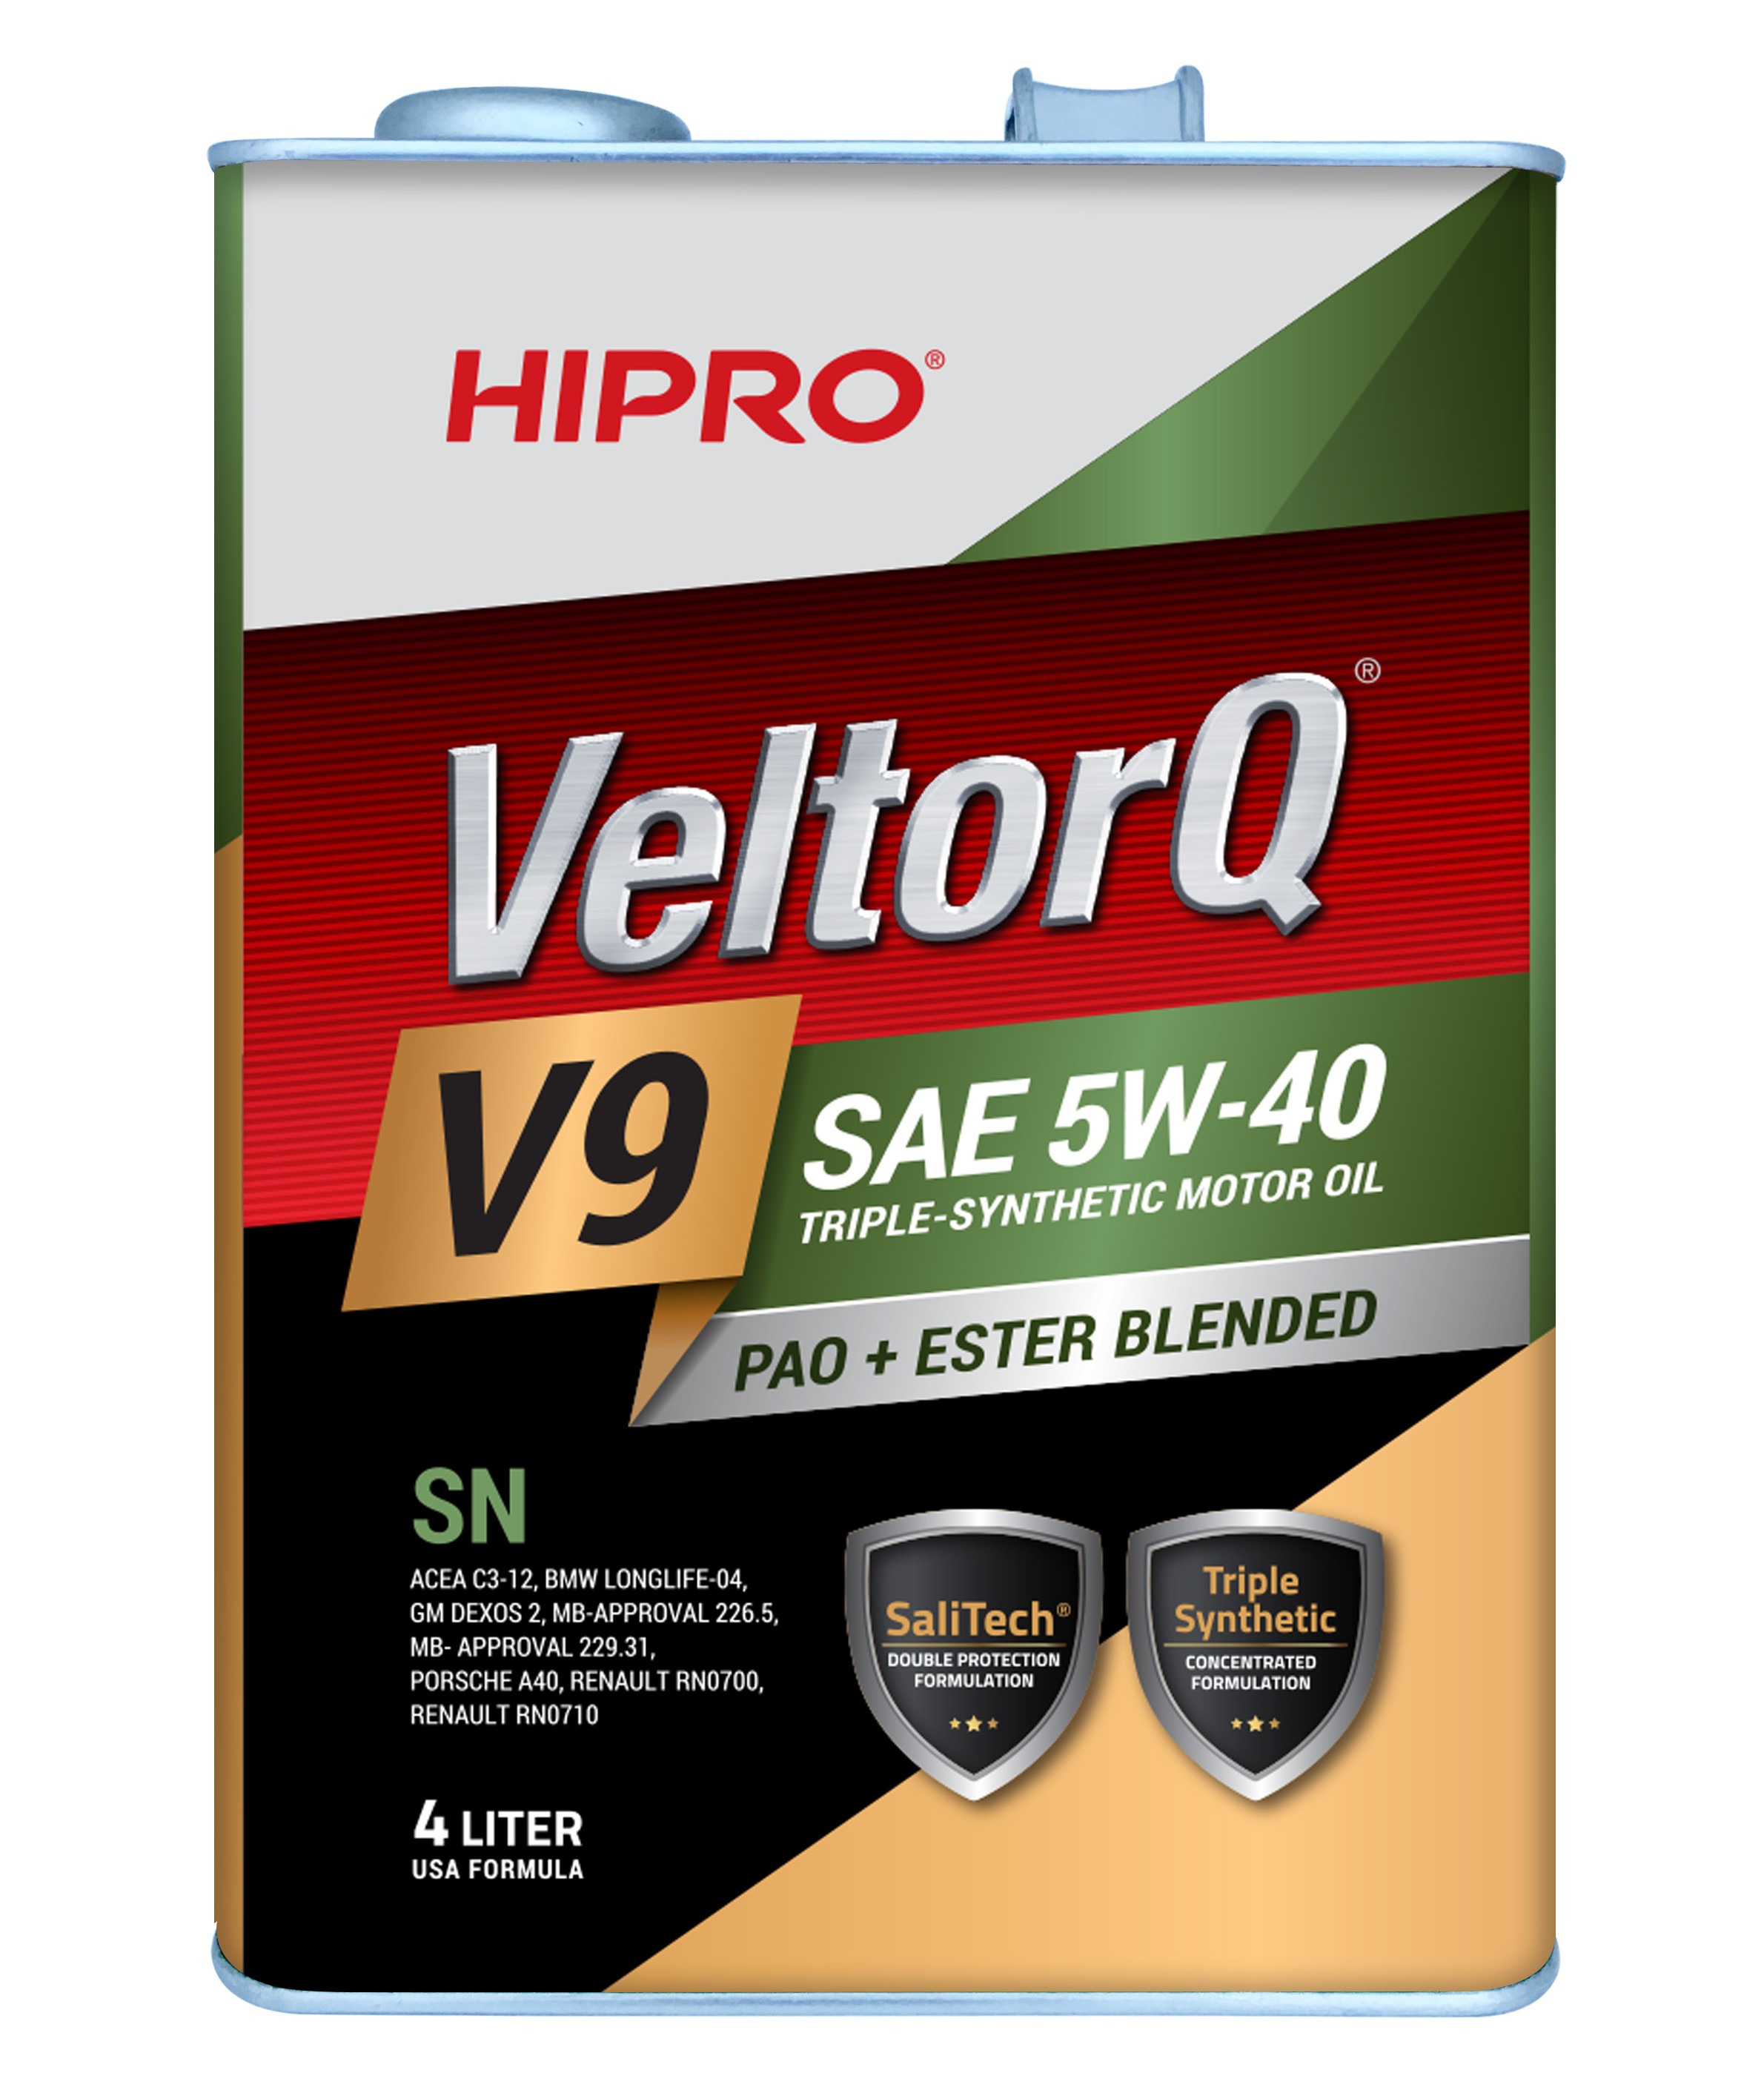 HIPRO VeltorQ Gold Series V9 SAE 5W-40 API SN/CF